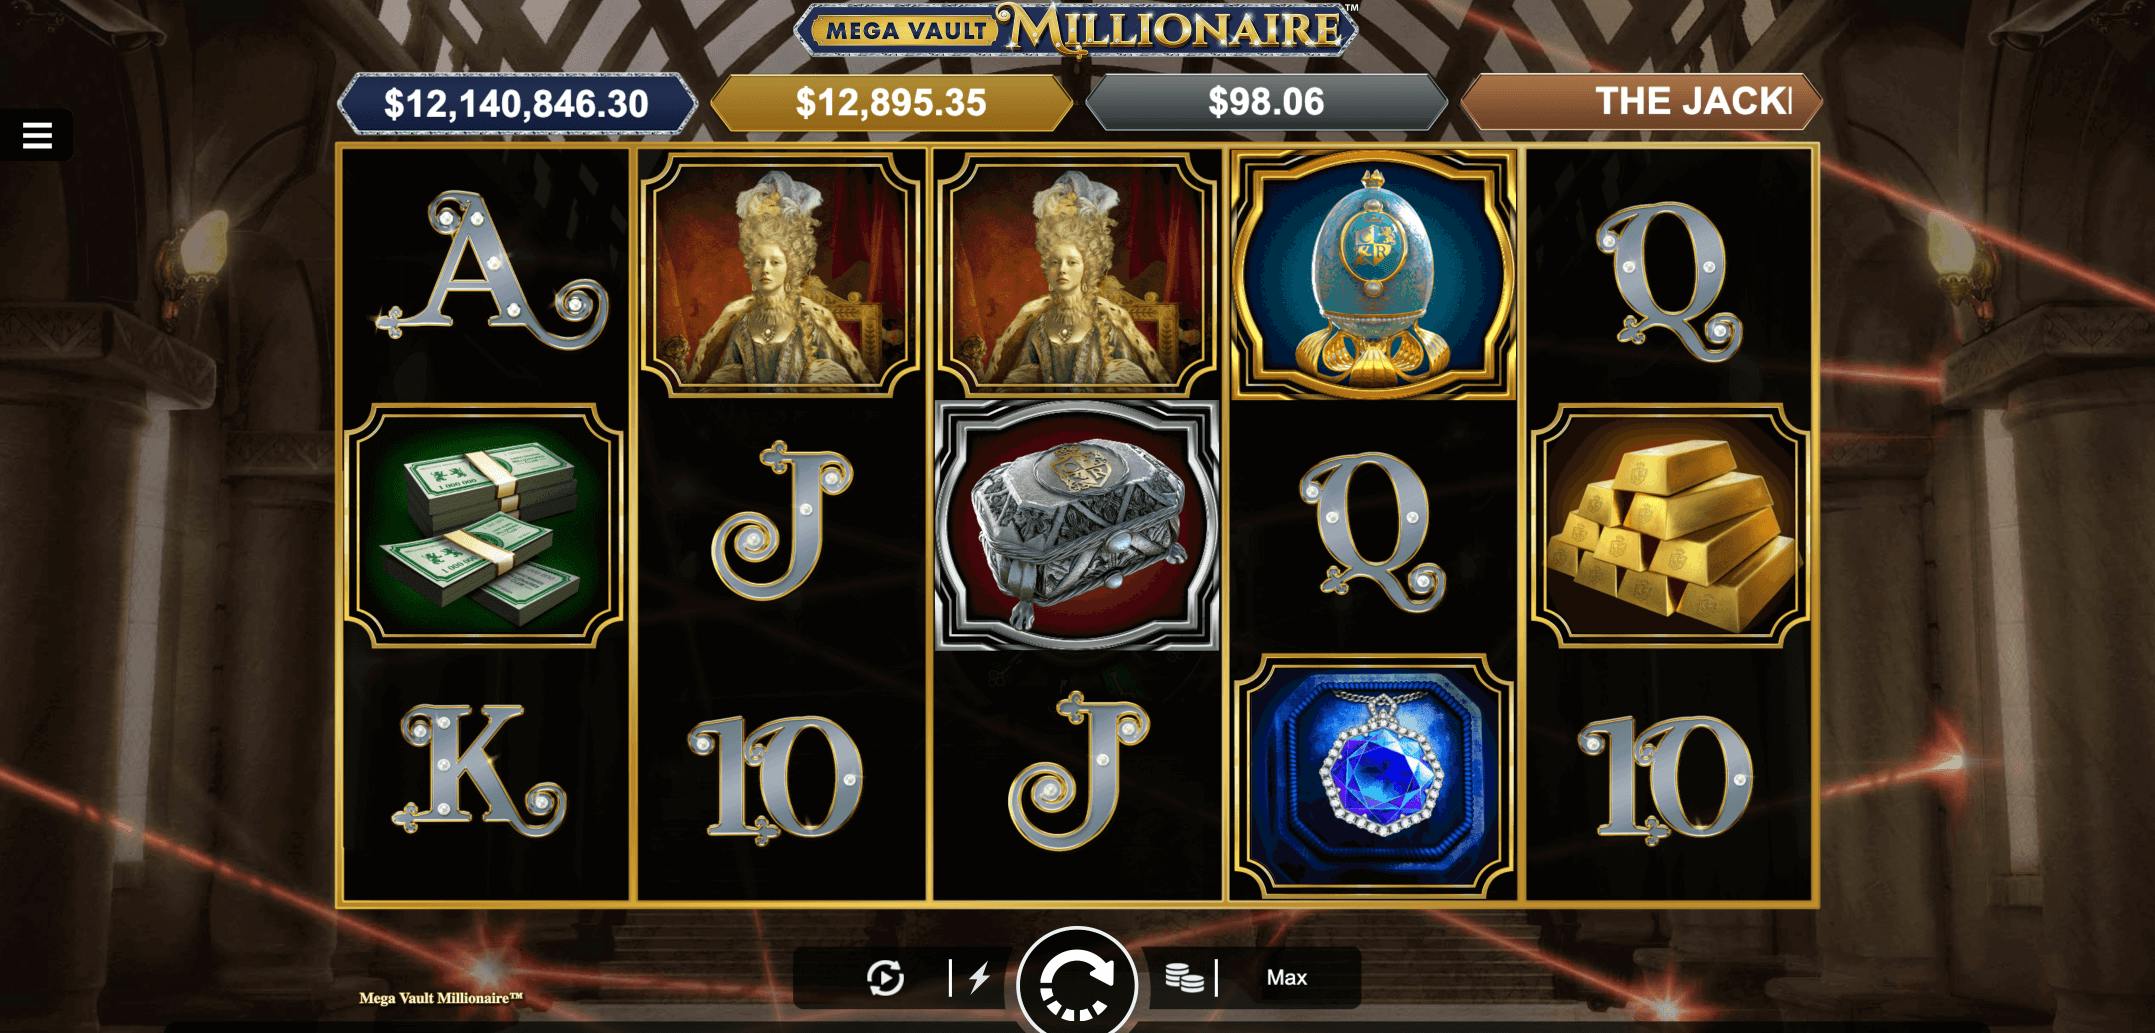 casino rewards mega vault millionaire